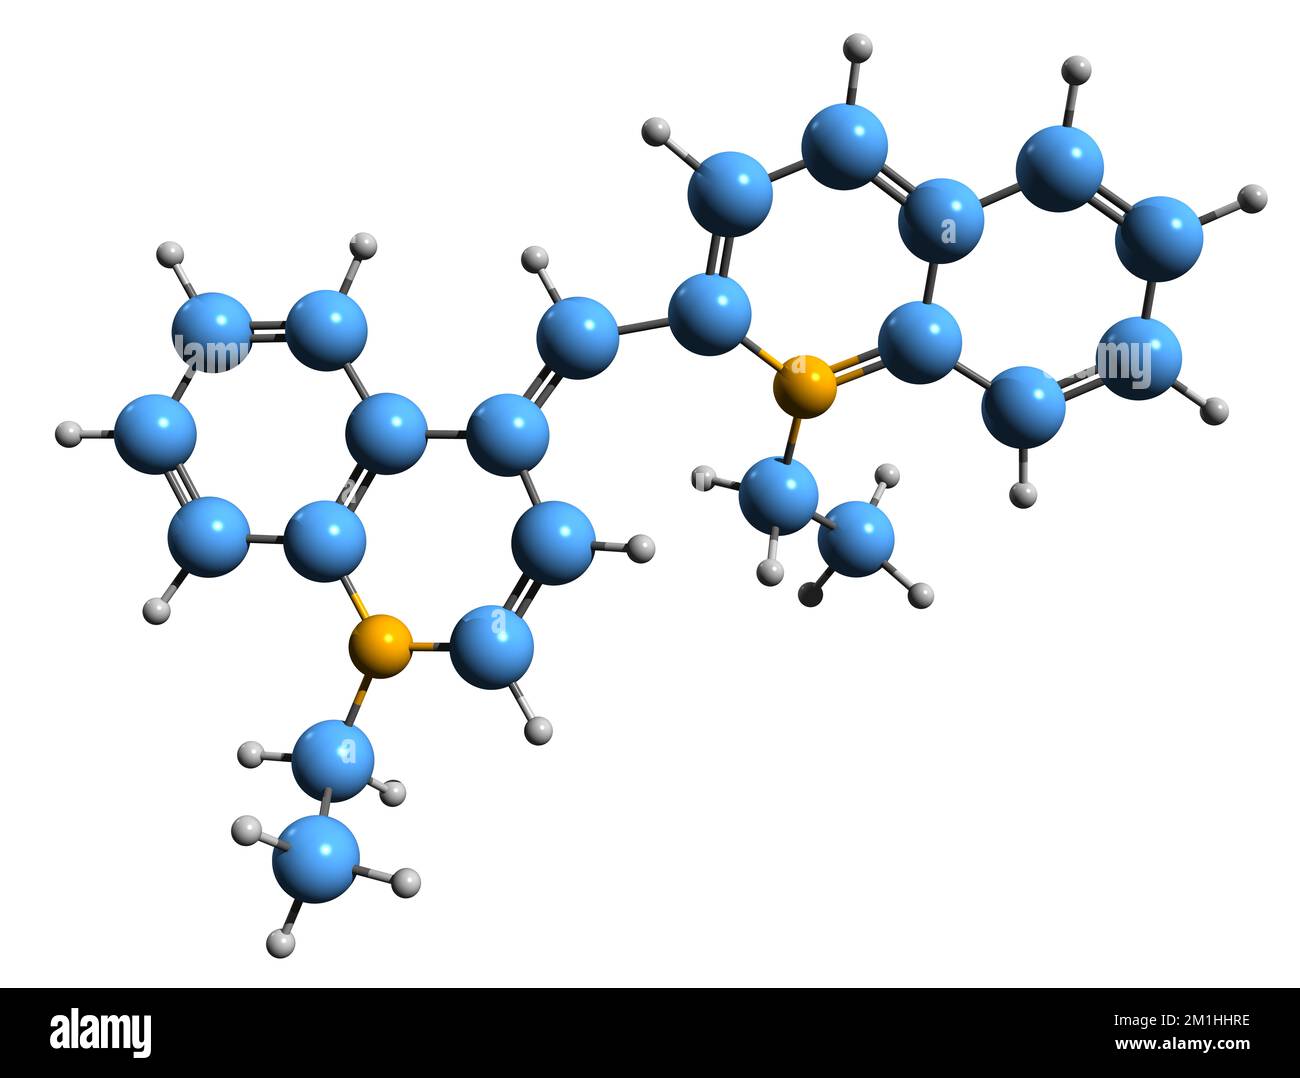 3D image of Isocyanine iodide skeletal formula - molecular chemical structure of methine dye Pseudoisocyanine iodide isolated on white background Stock Photo